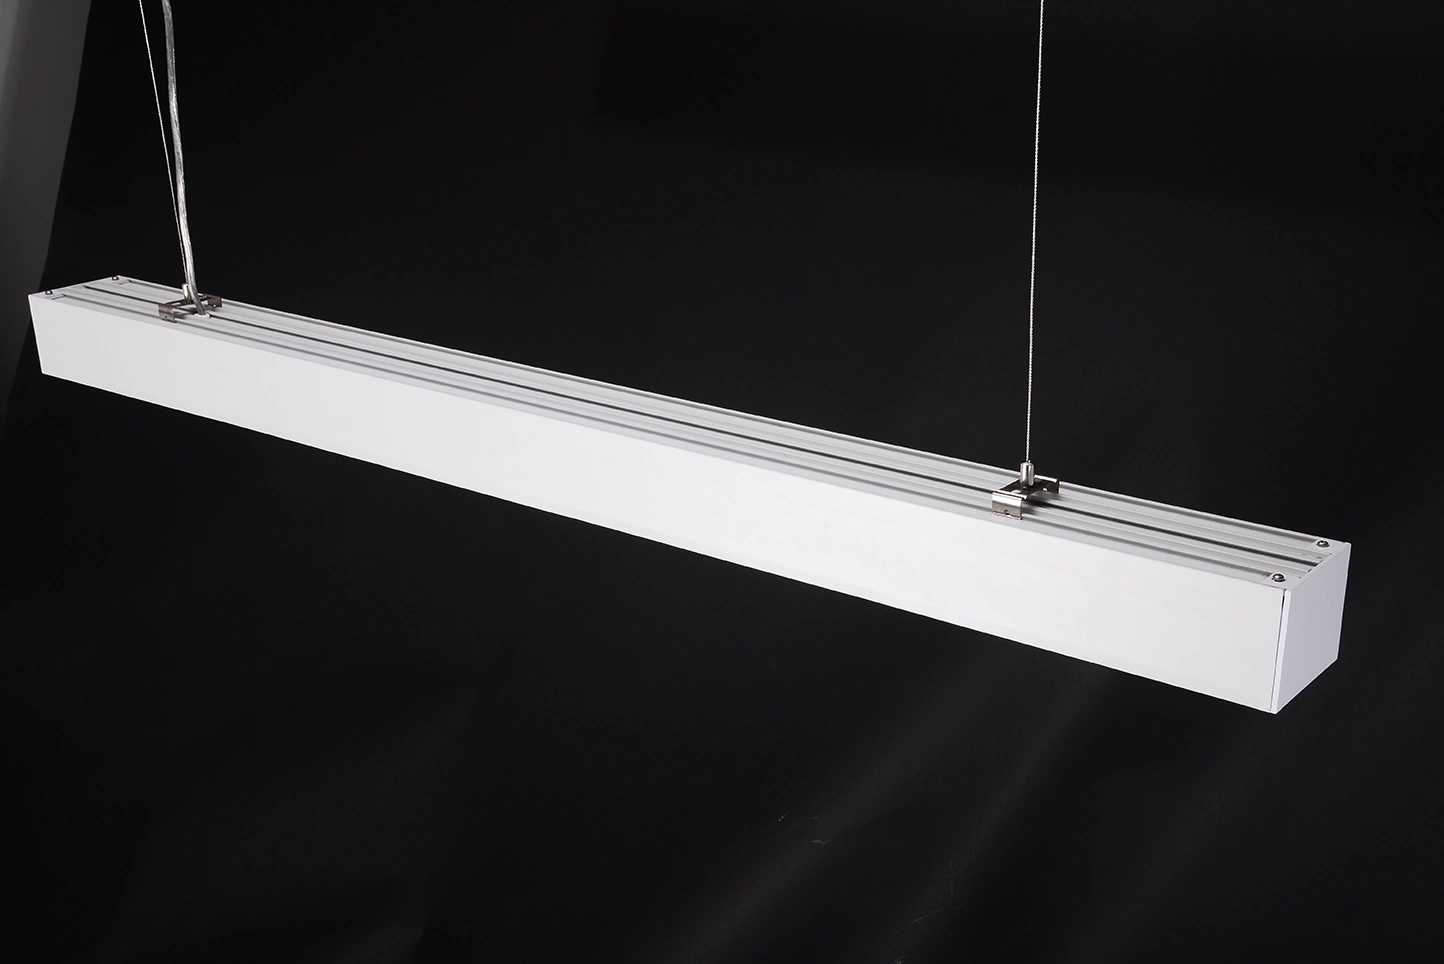 LED Hanging Pendant Linear Light/LED Suspended Light/Lamp for Home/Office